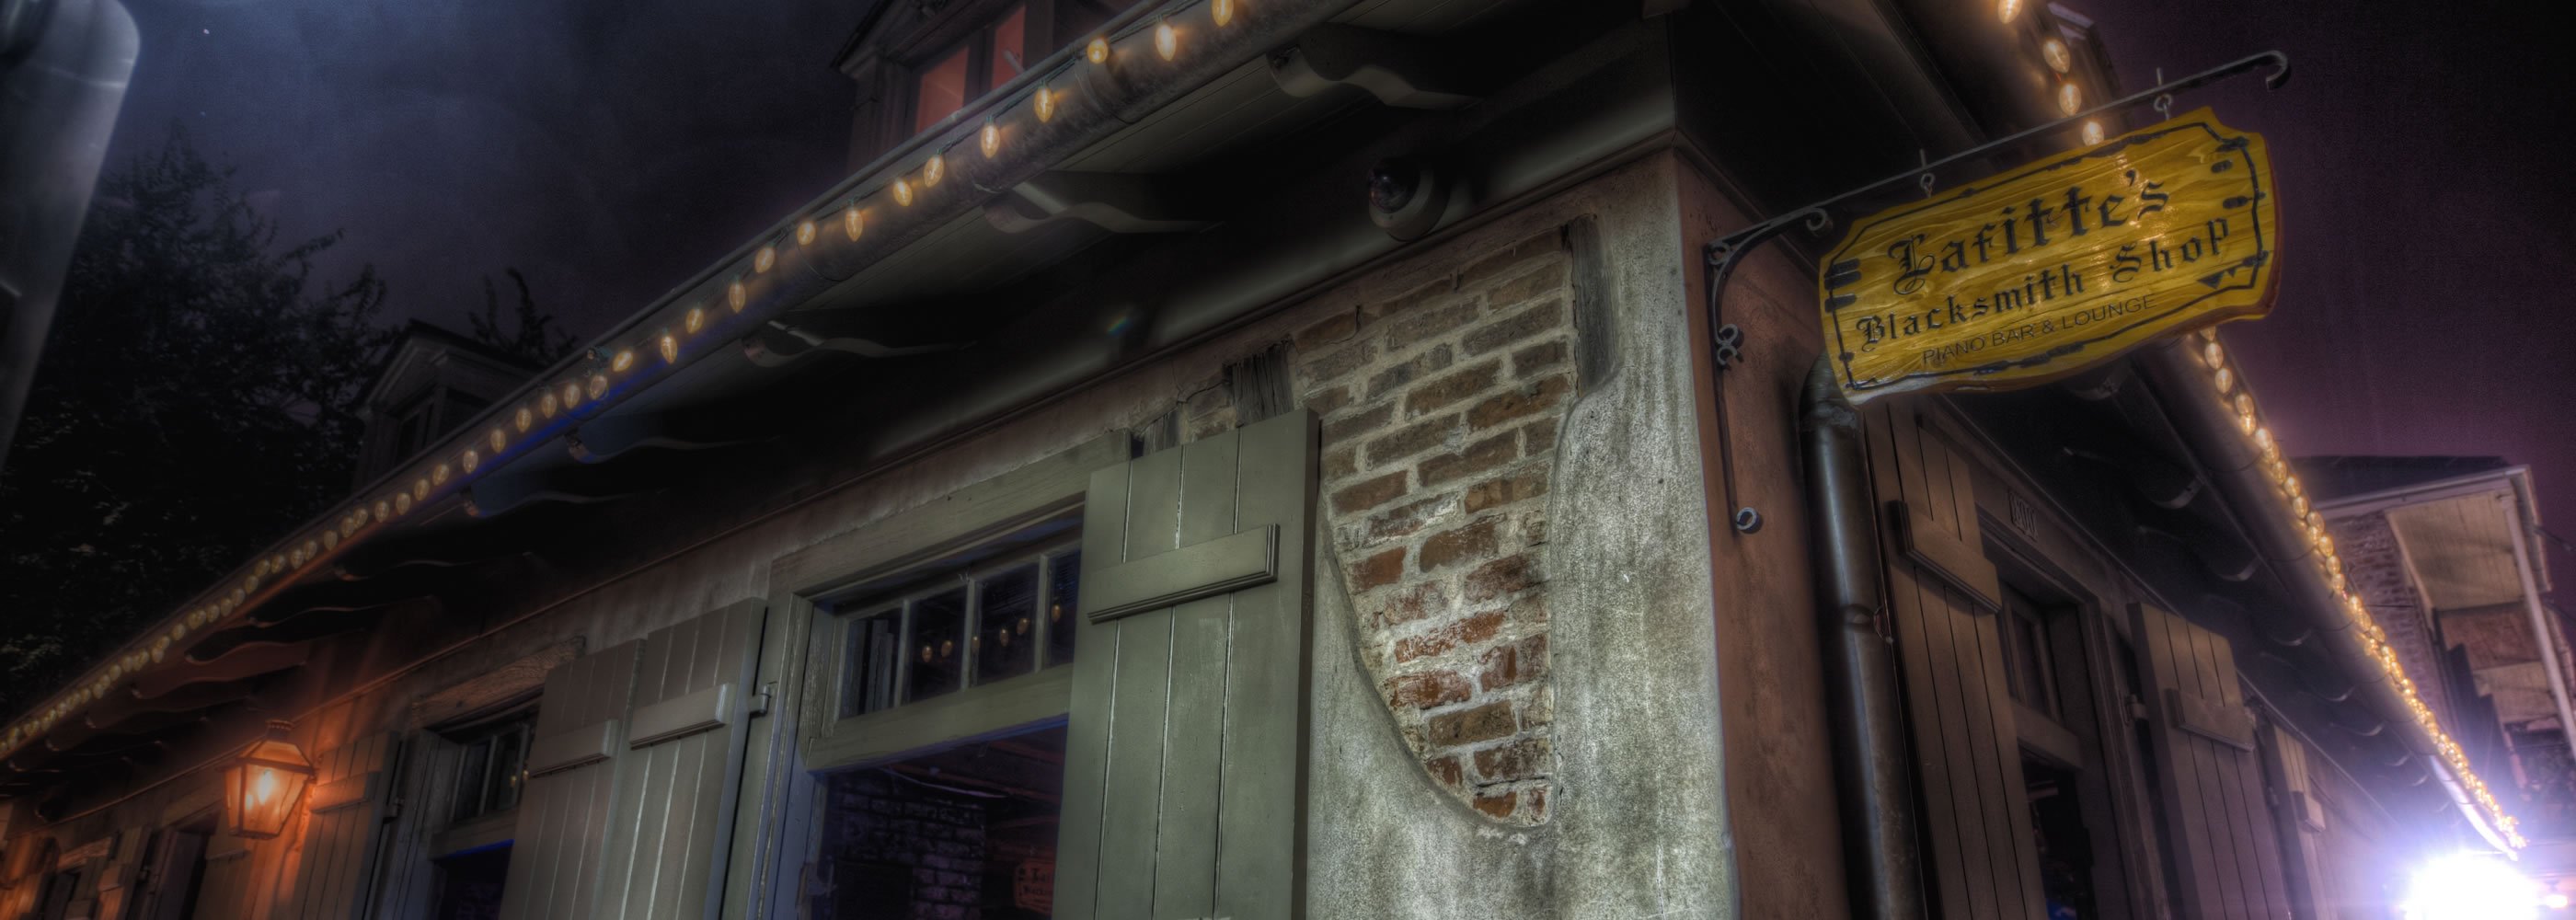 El Lafitte's Blacksmith Shop, uno de los bares más embrujados del Barrio Francés en Nueva Orleans